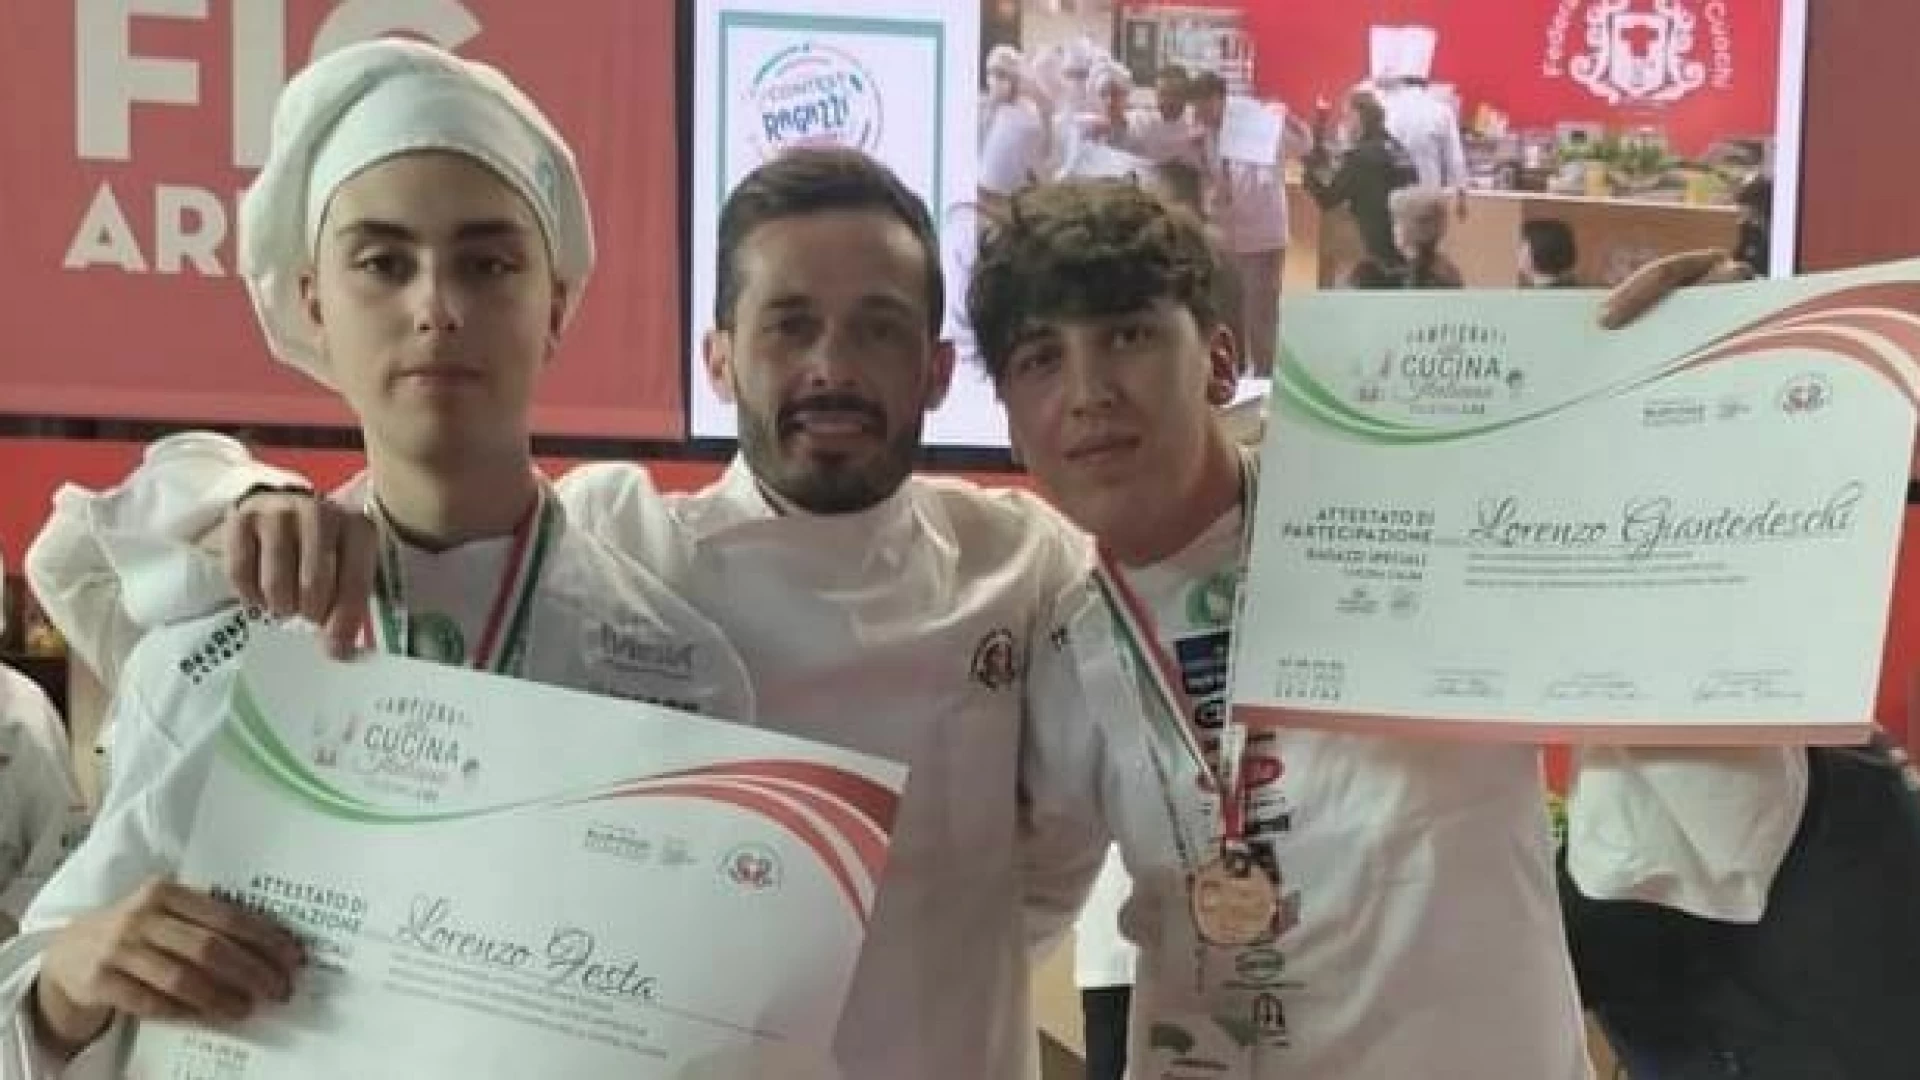 Campionati della Cucina Italiana. Tra i giovani protagonisti anche gli studenti dell’Alberghiero.